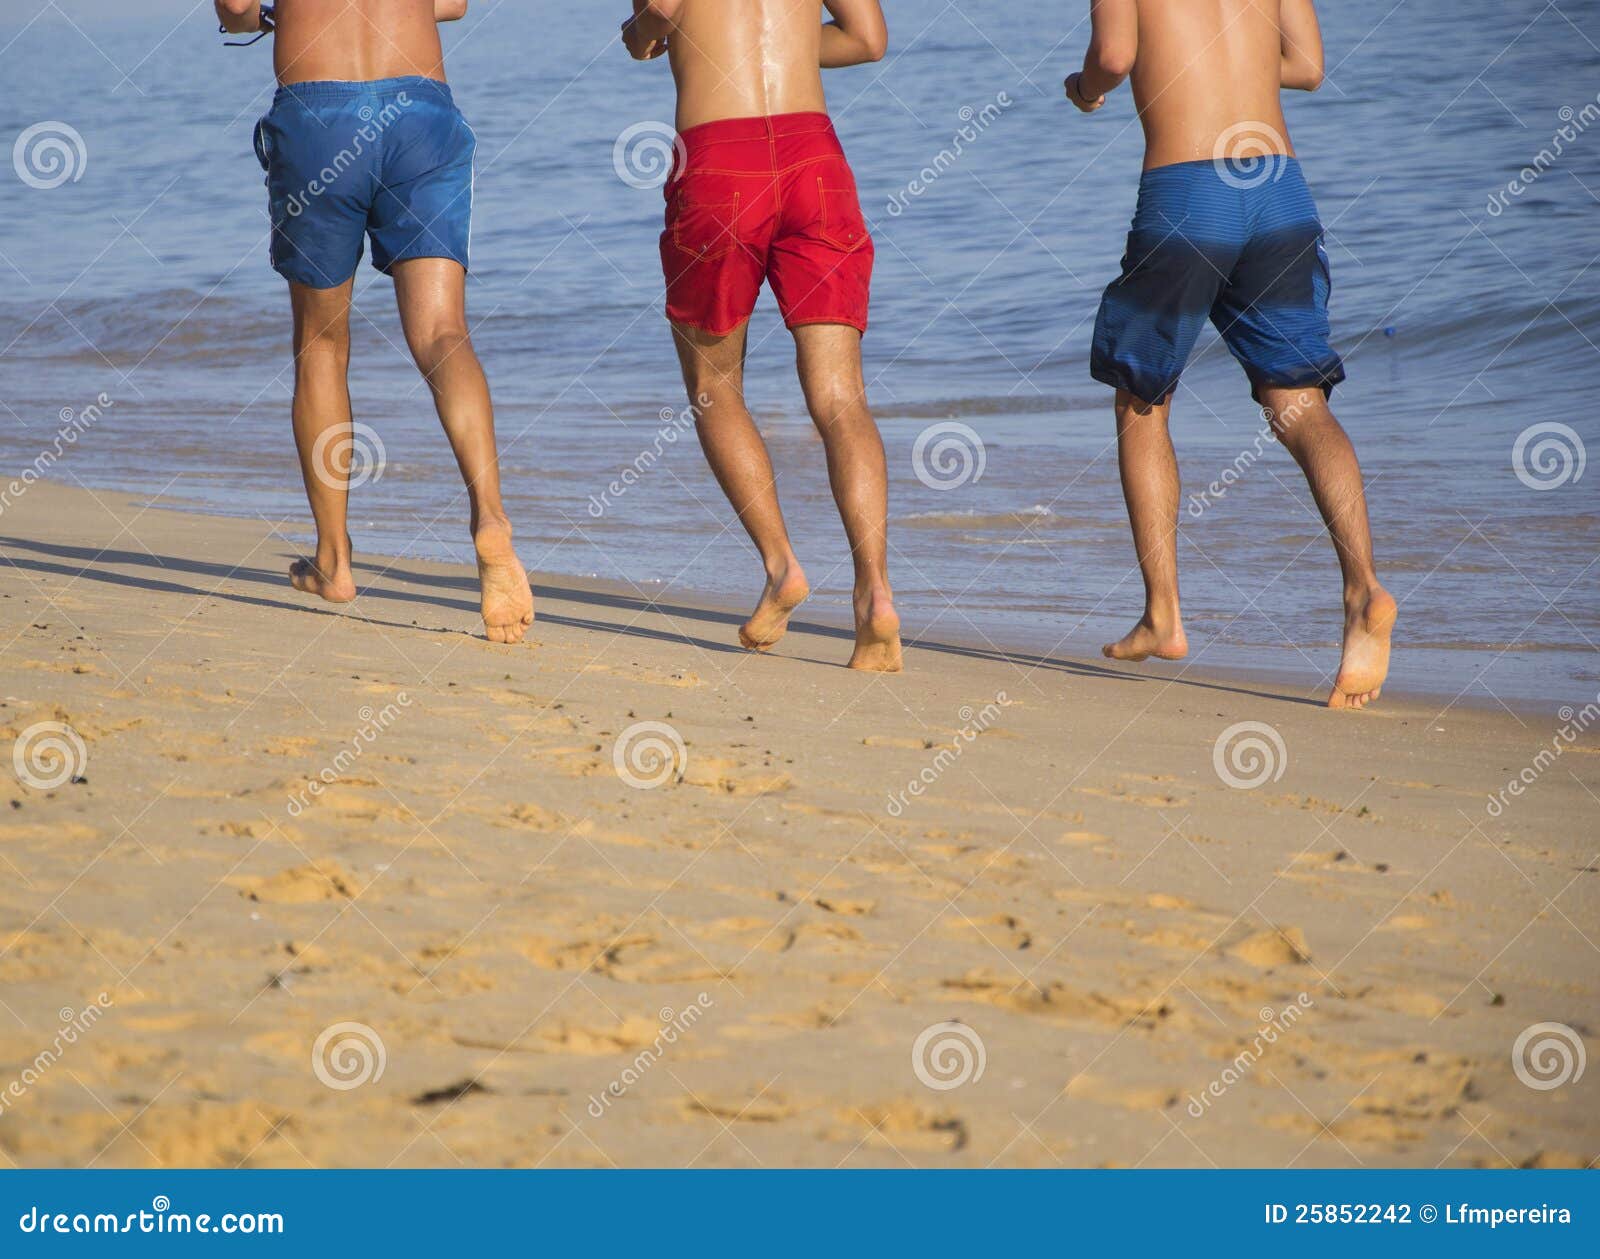 Голые Дети На Пляже Фото